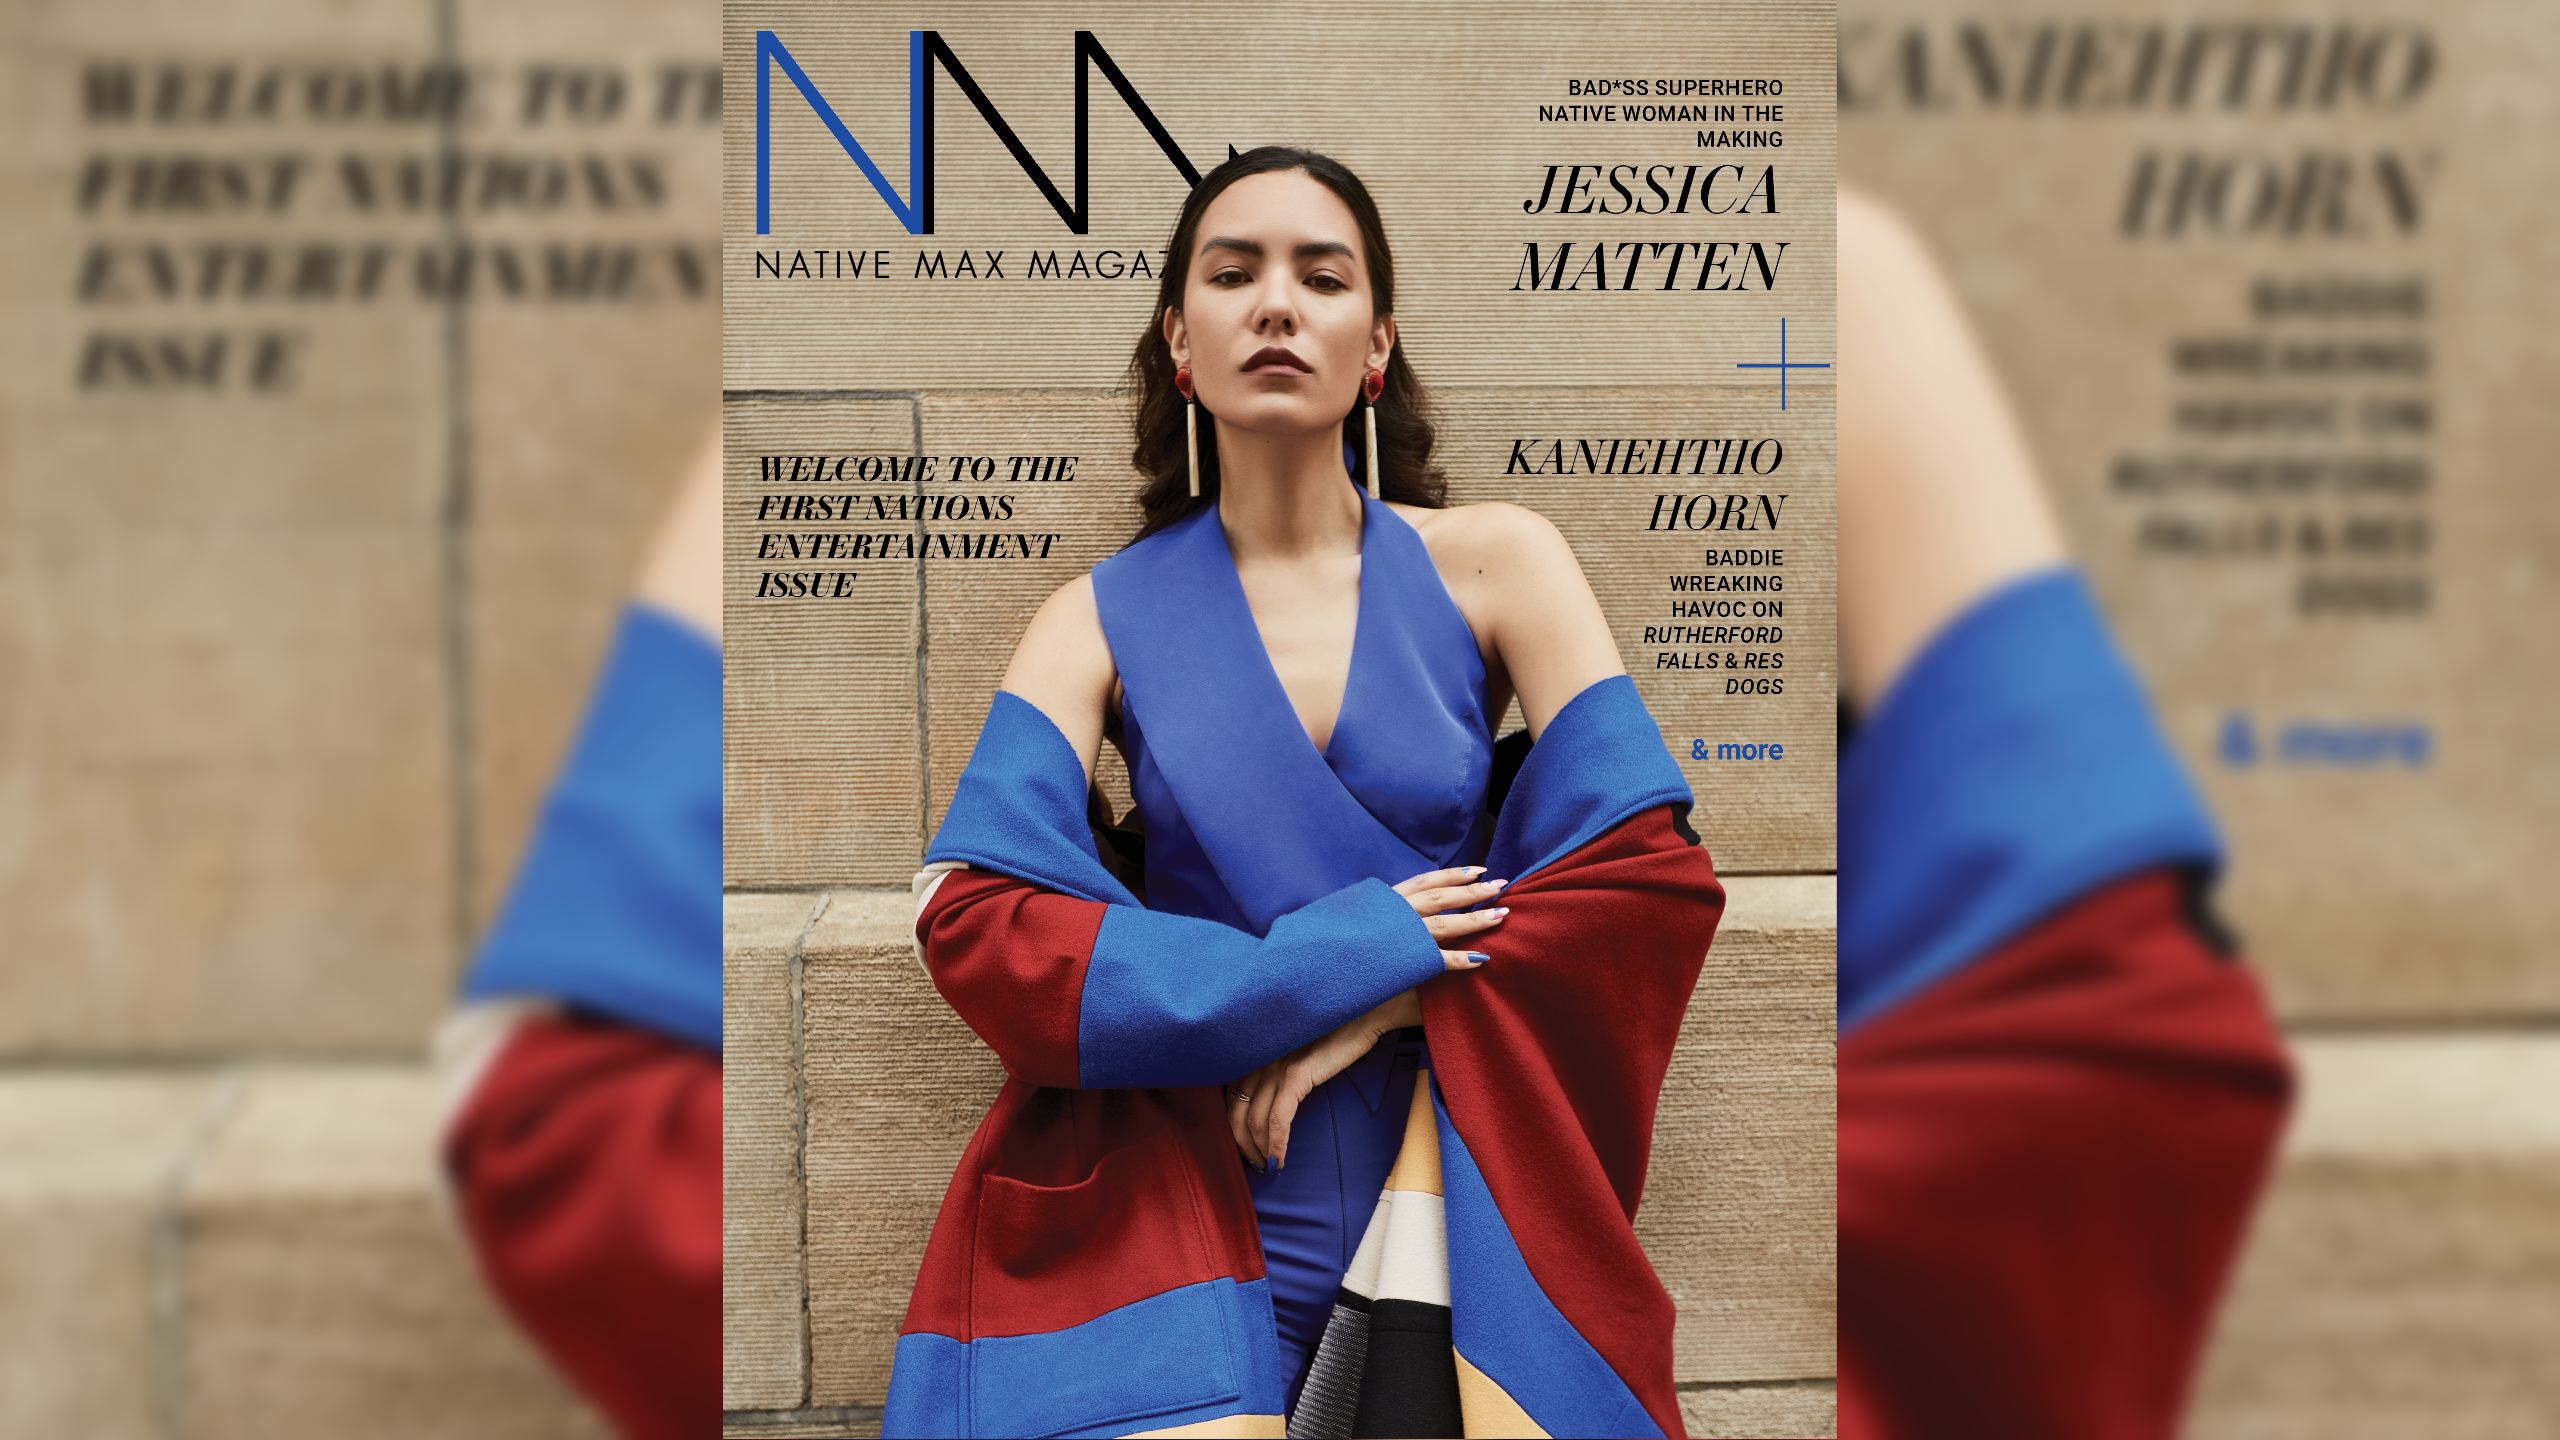 Jessica Matten on the cover of Native Max Magazine